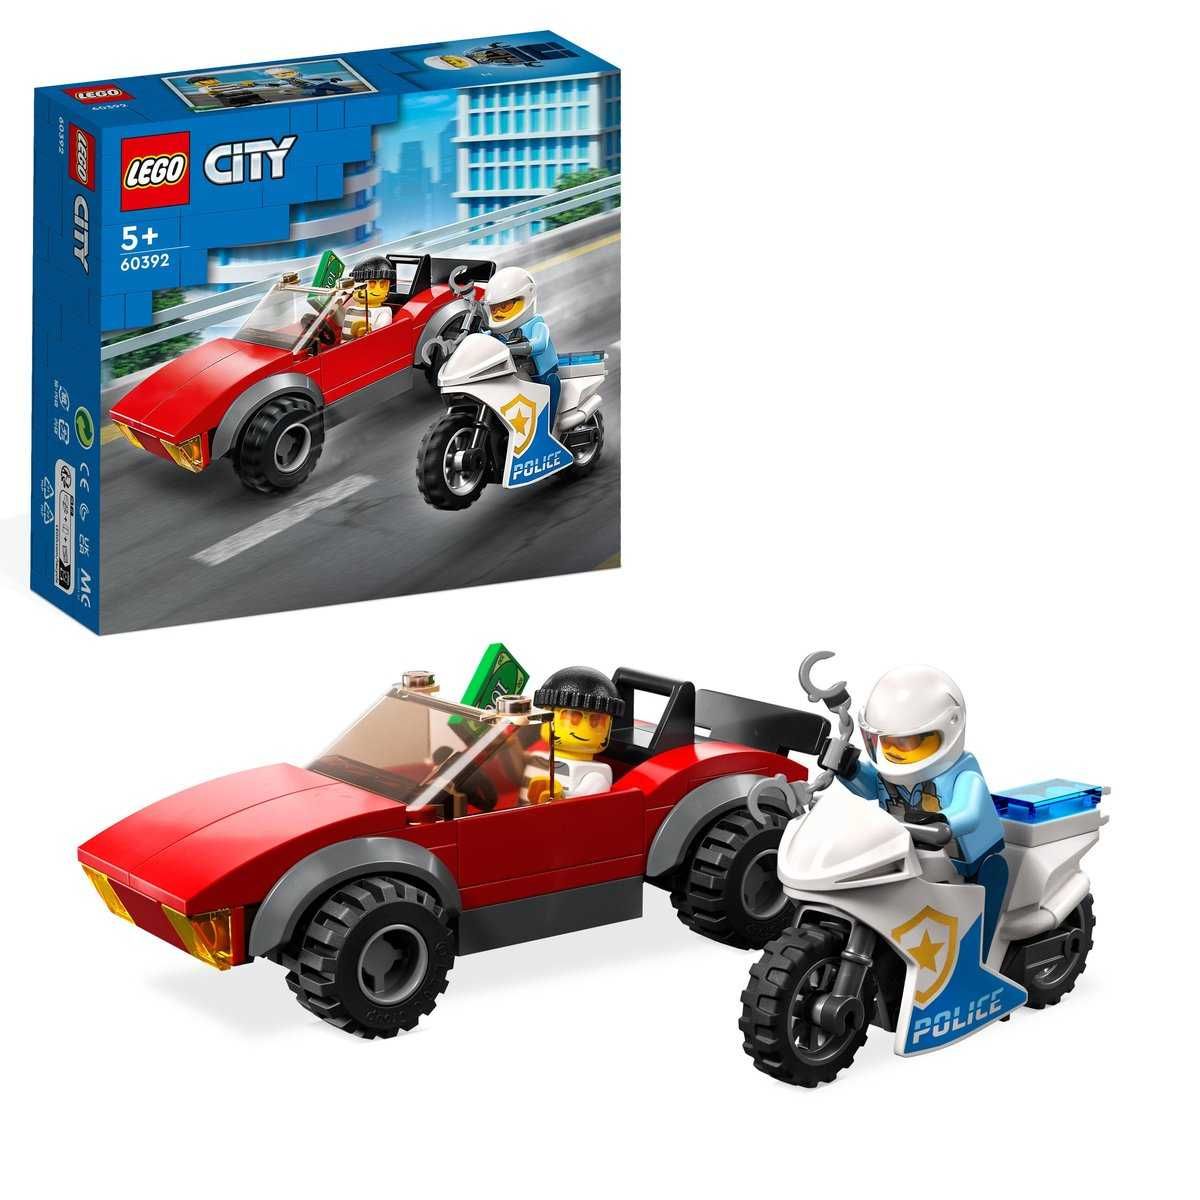 Lego city 60392 MOTOCYKL Policyjny- POŚCIG klocki